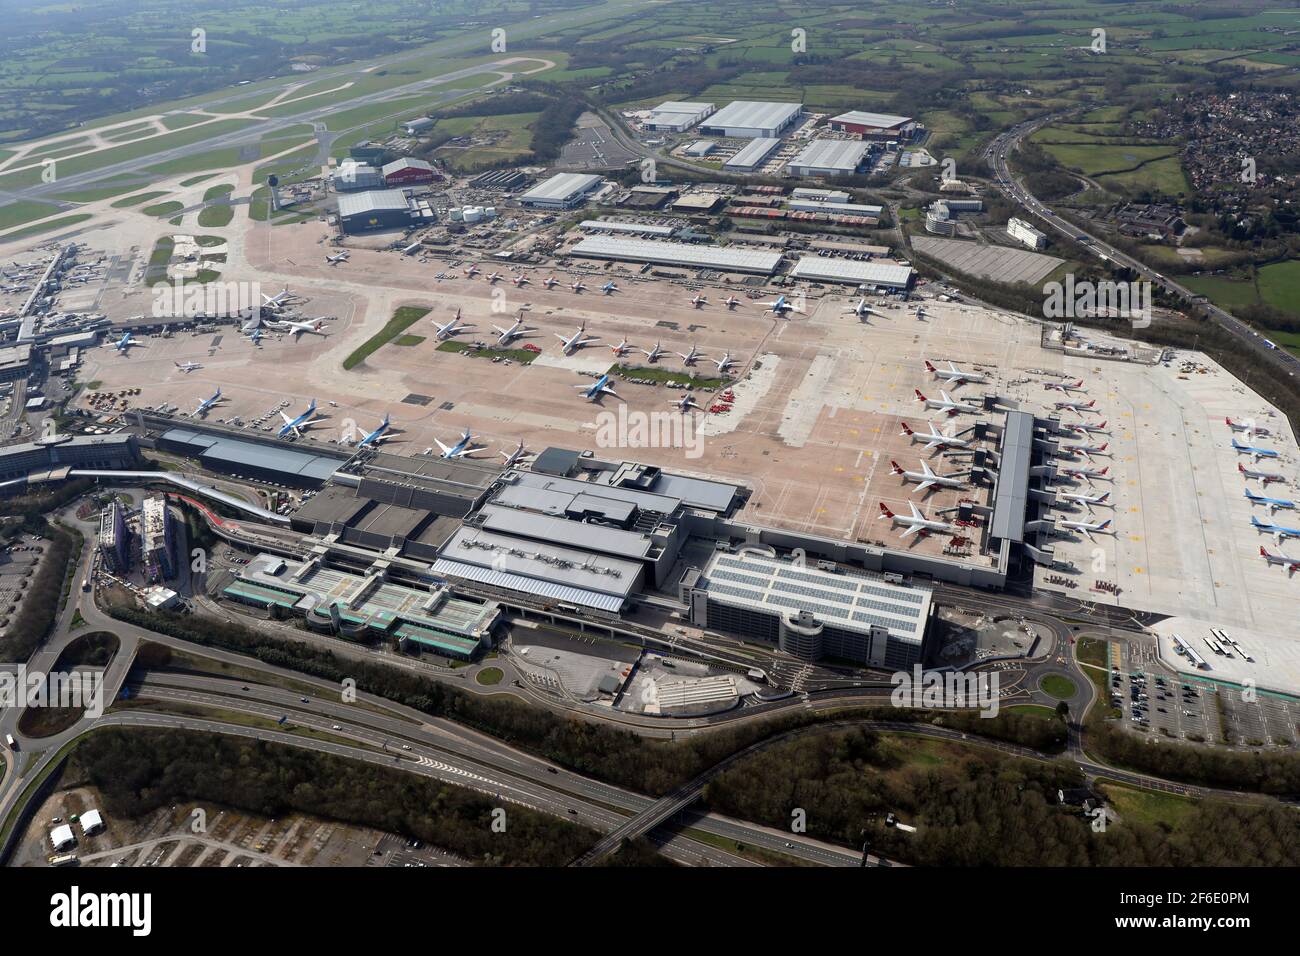 Vue aérienne de l'aéroport de Manchester, vue sur le bâtiment du terminal 2, prise le 30 mars 2021 Banque D'Images